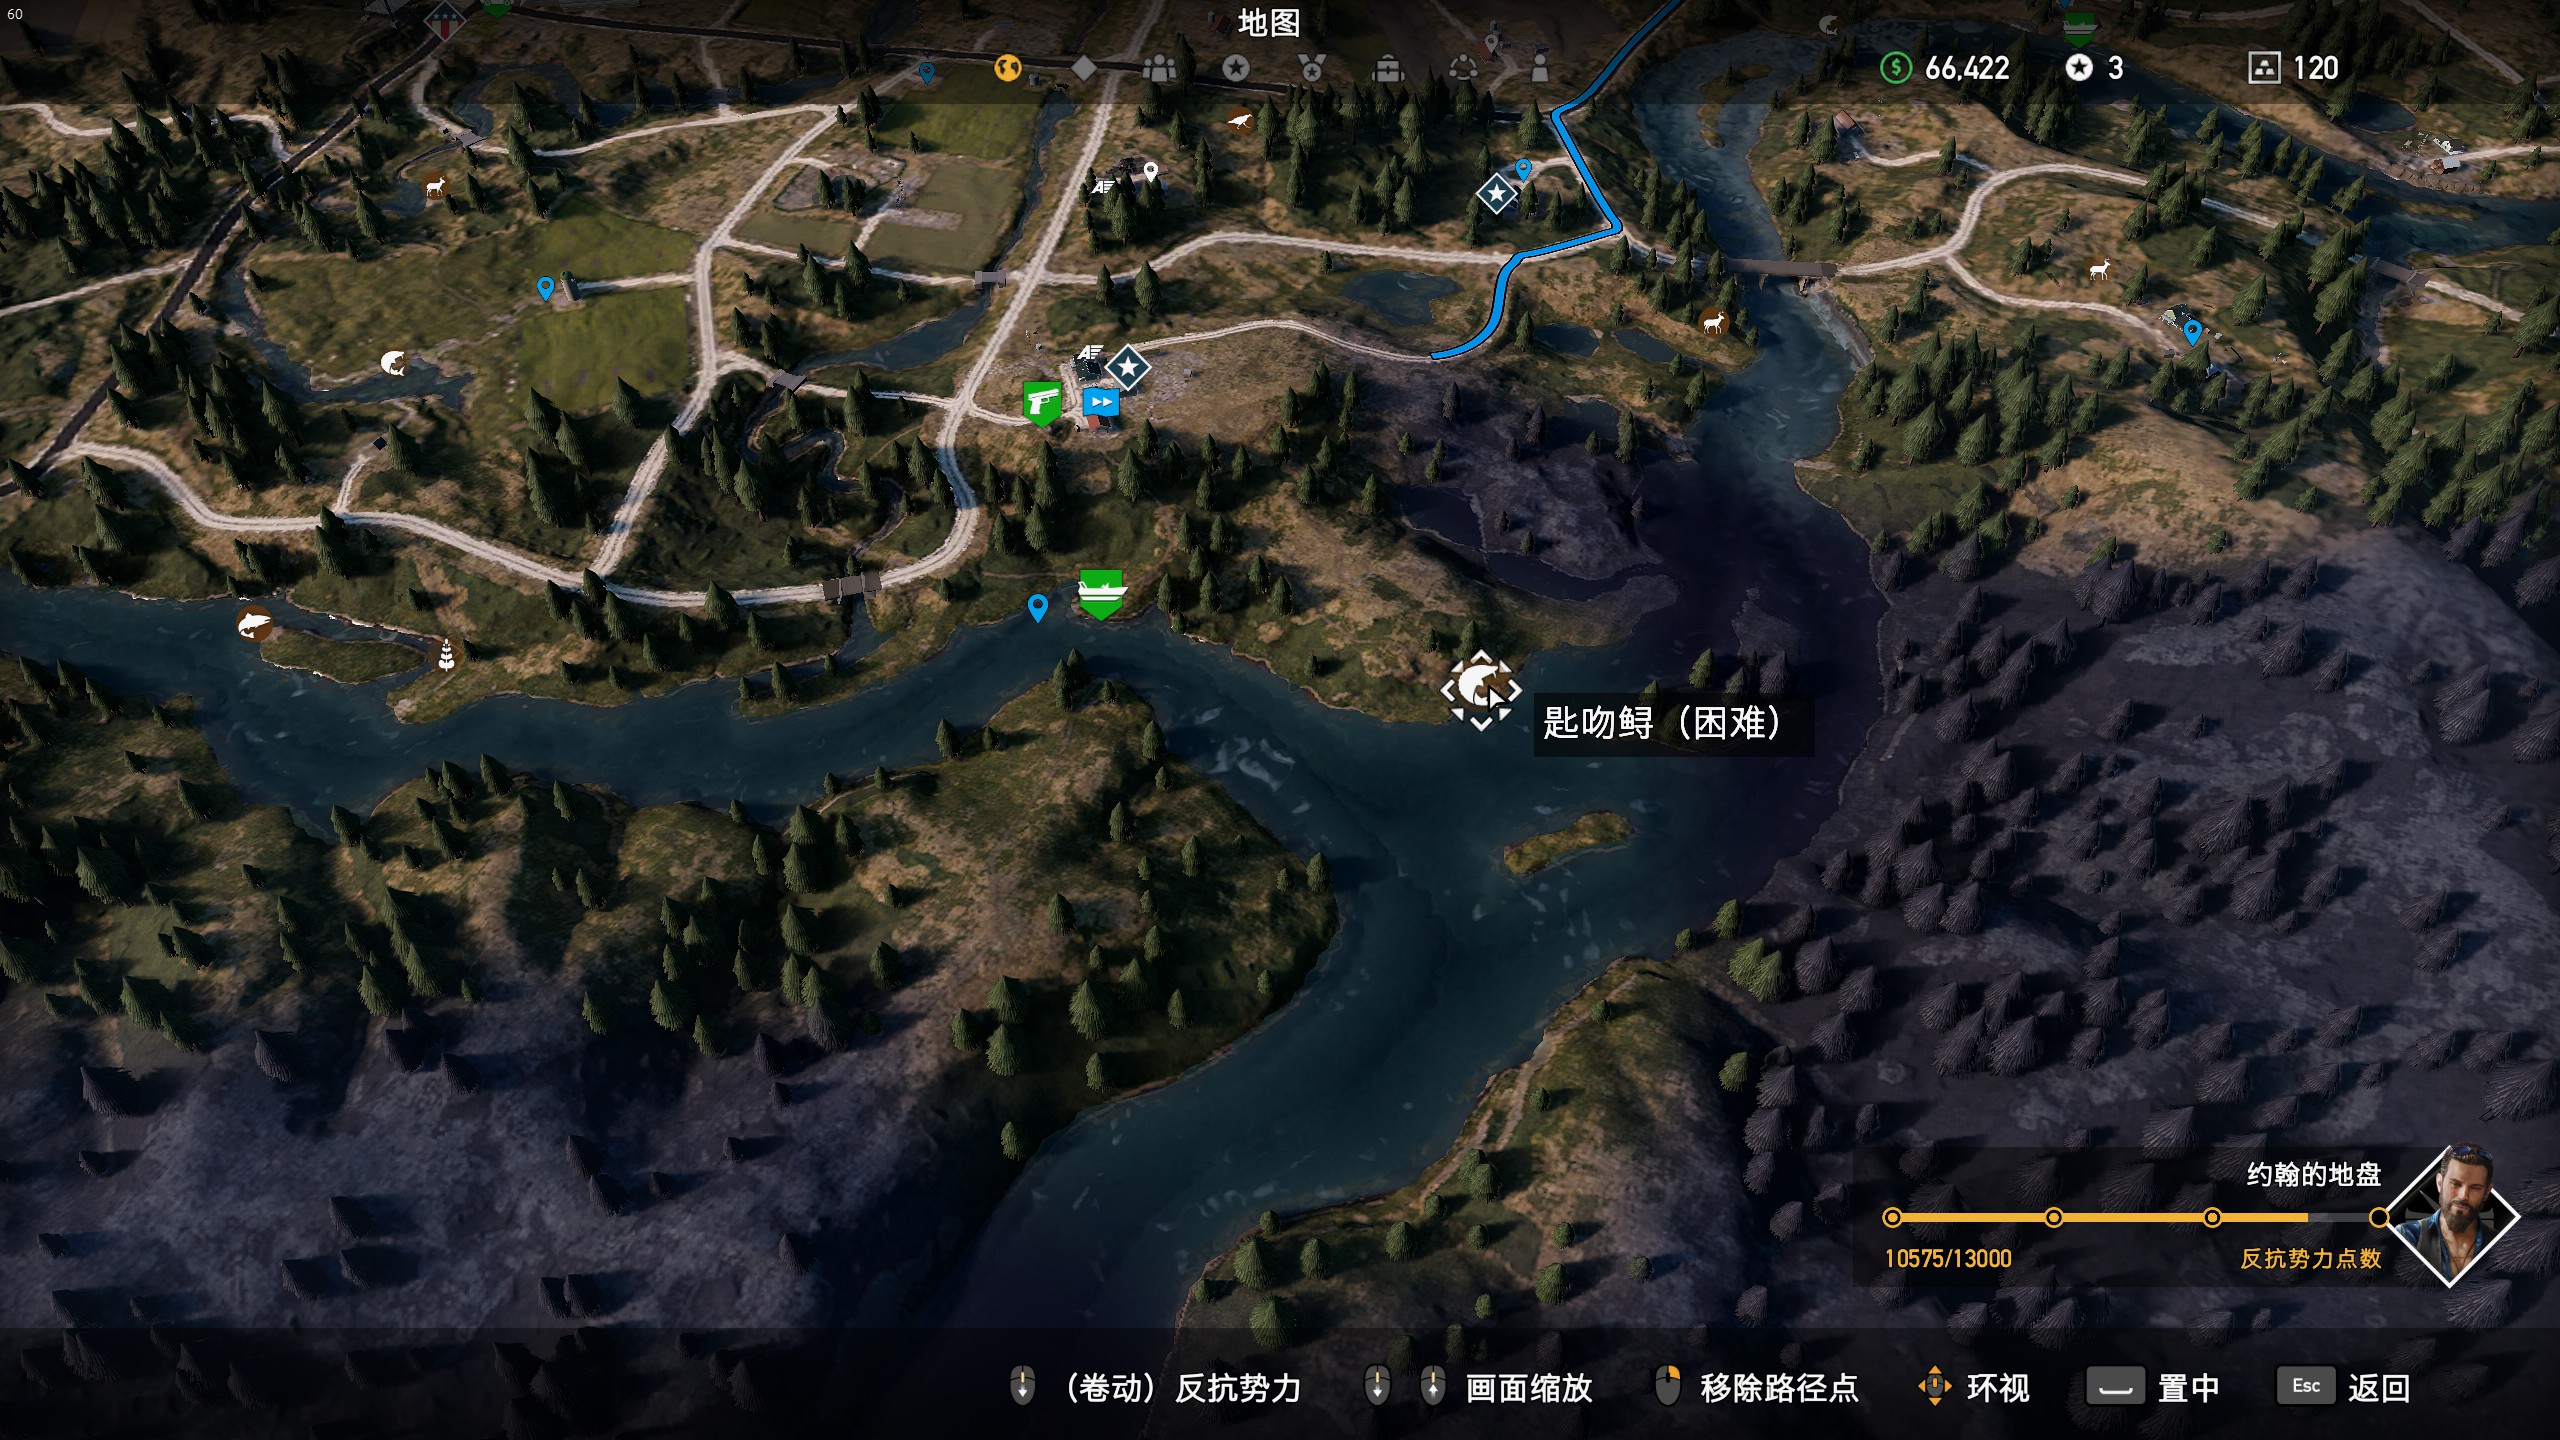 攻略中心 游戏攻略 孤岛惊魂5攻略  第四根鱼竿就是直接按照地图找到图片